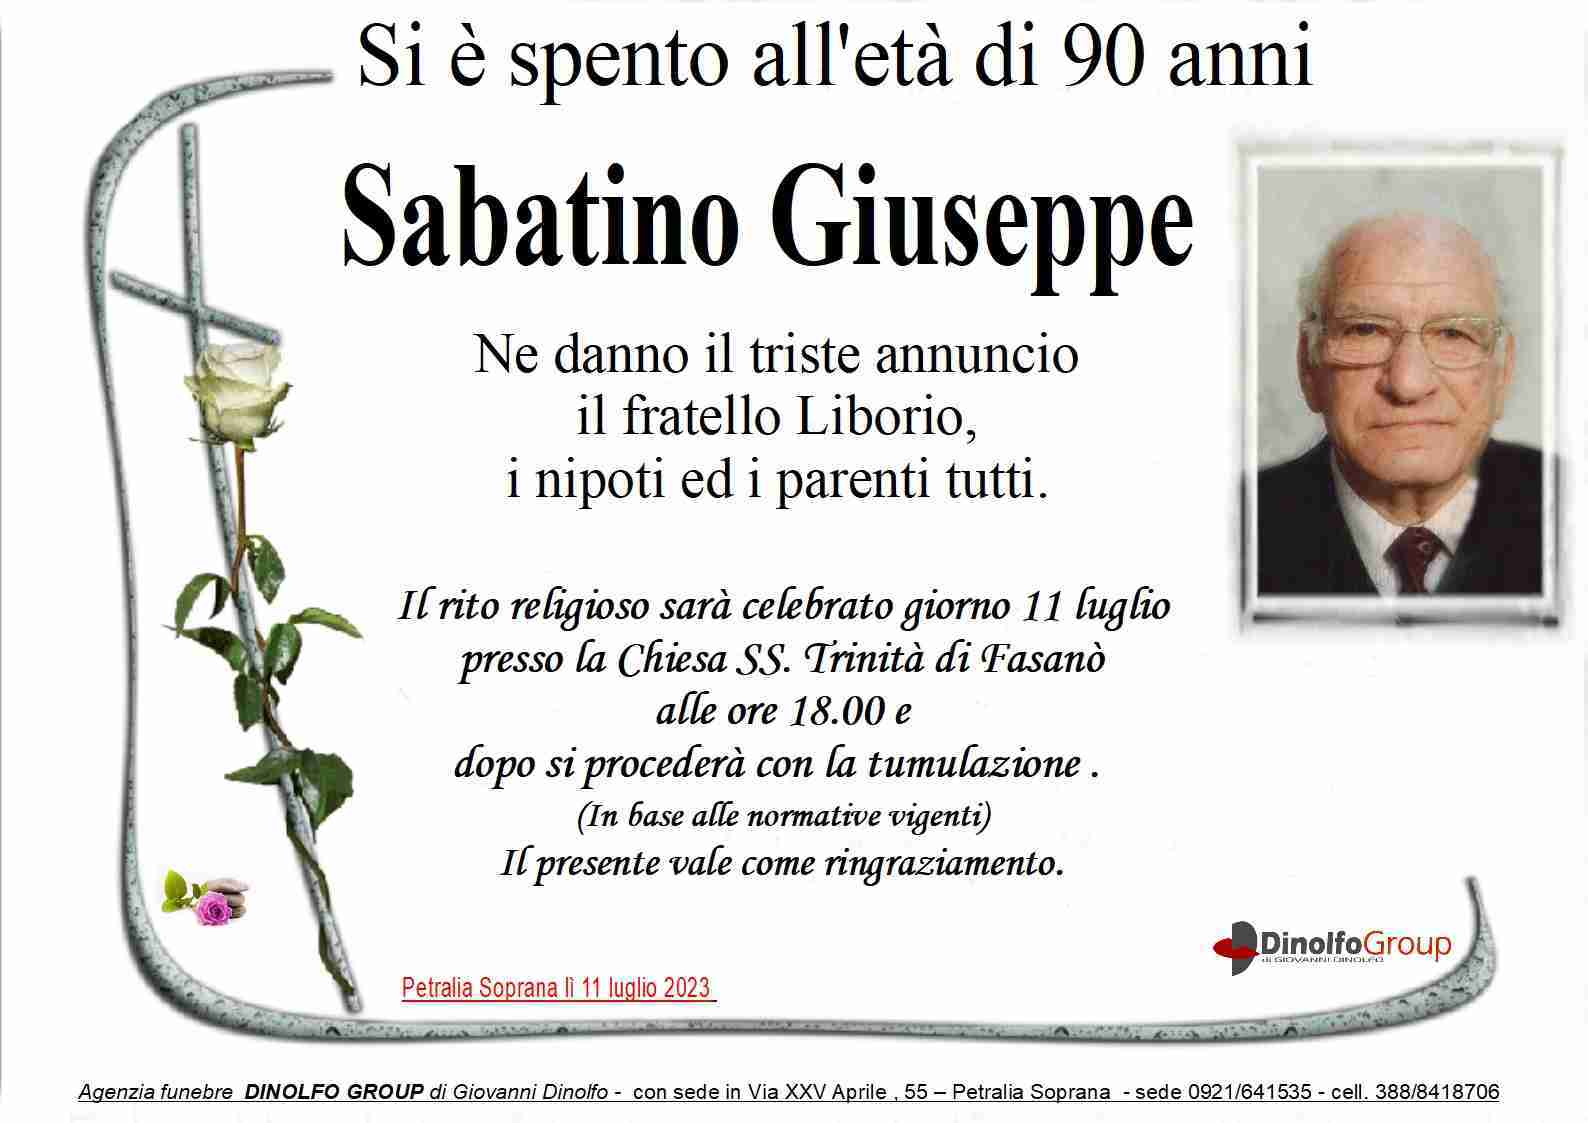 Giuseppe Sabatino